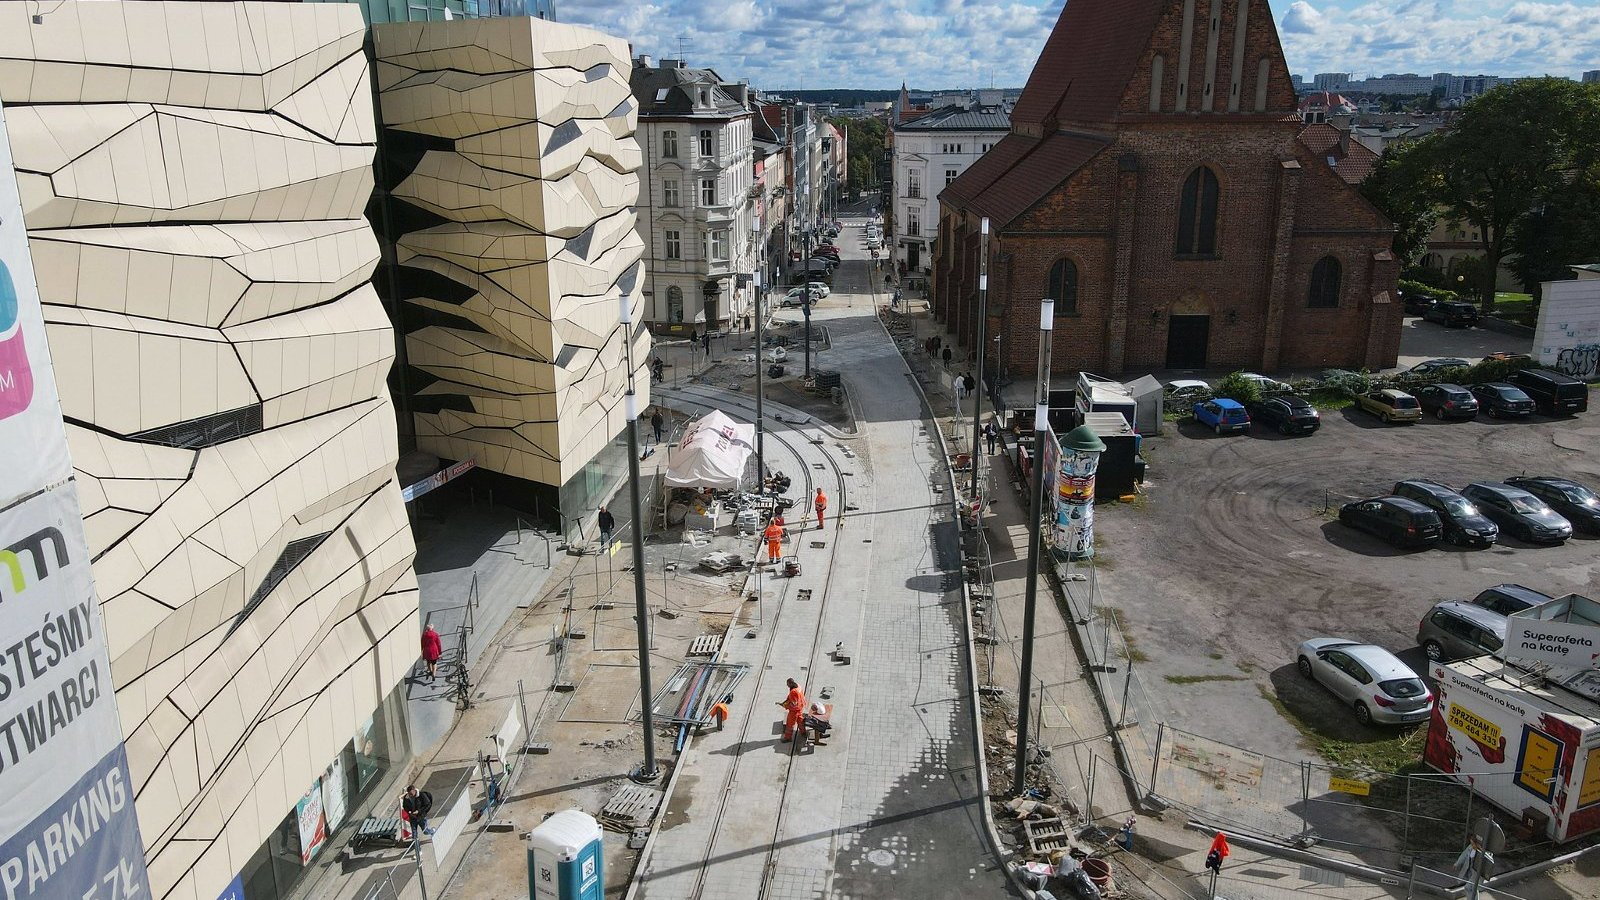 Galeria zdjęć przedstawia roboty budowlane w centrum Poznania widziane z lotu ptaka.